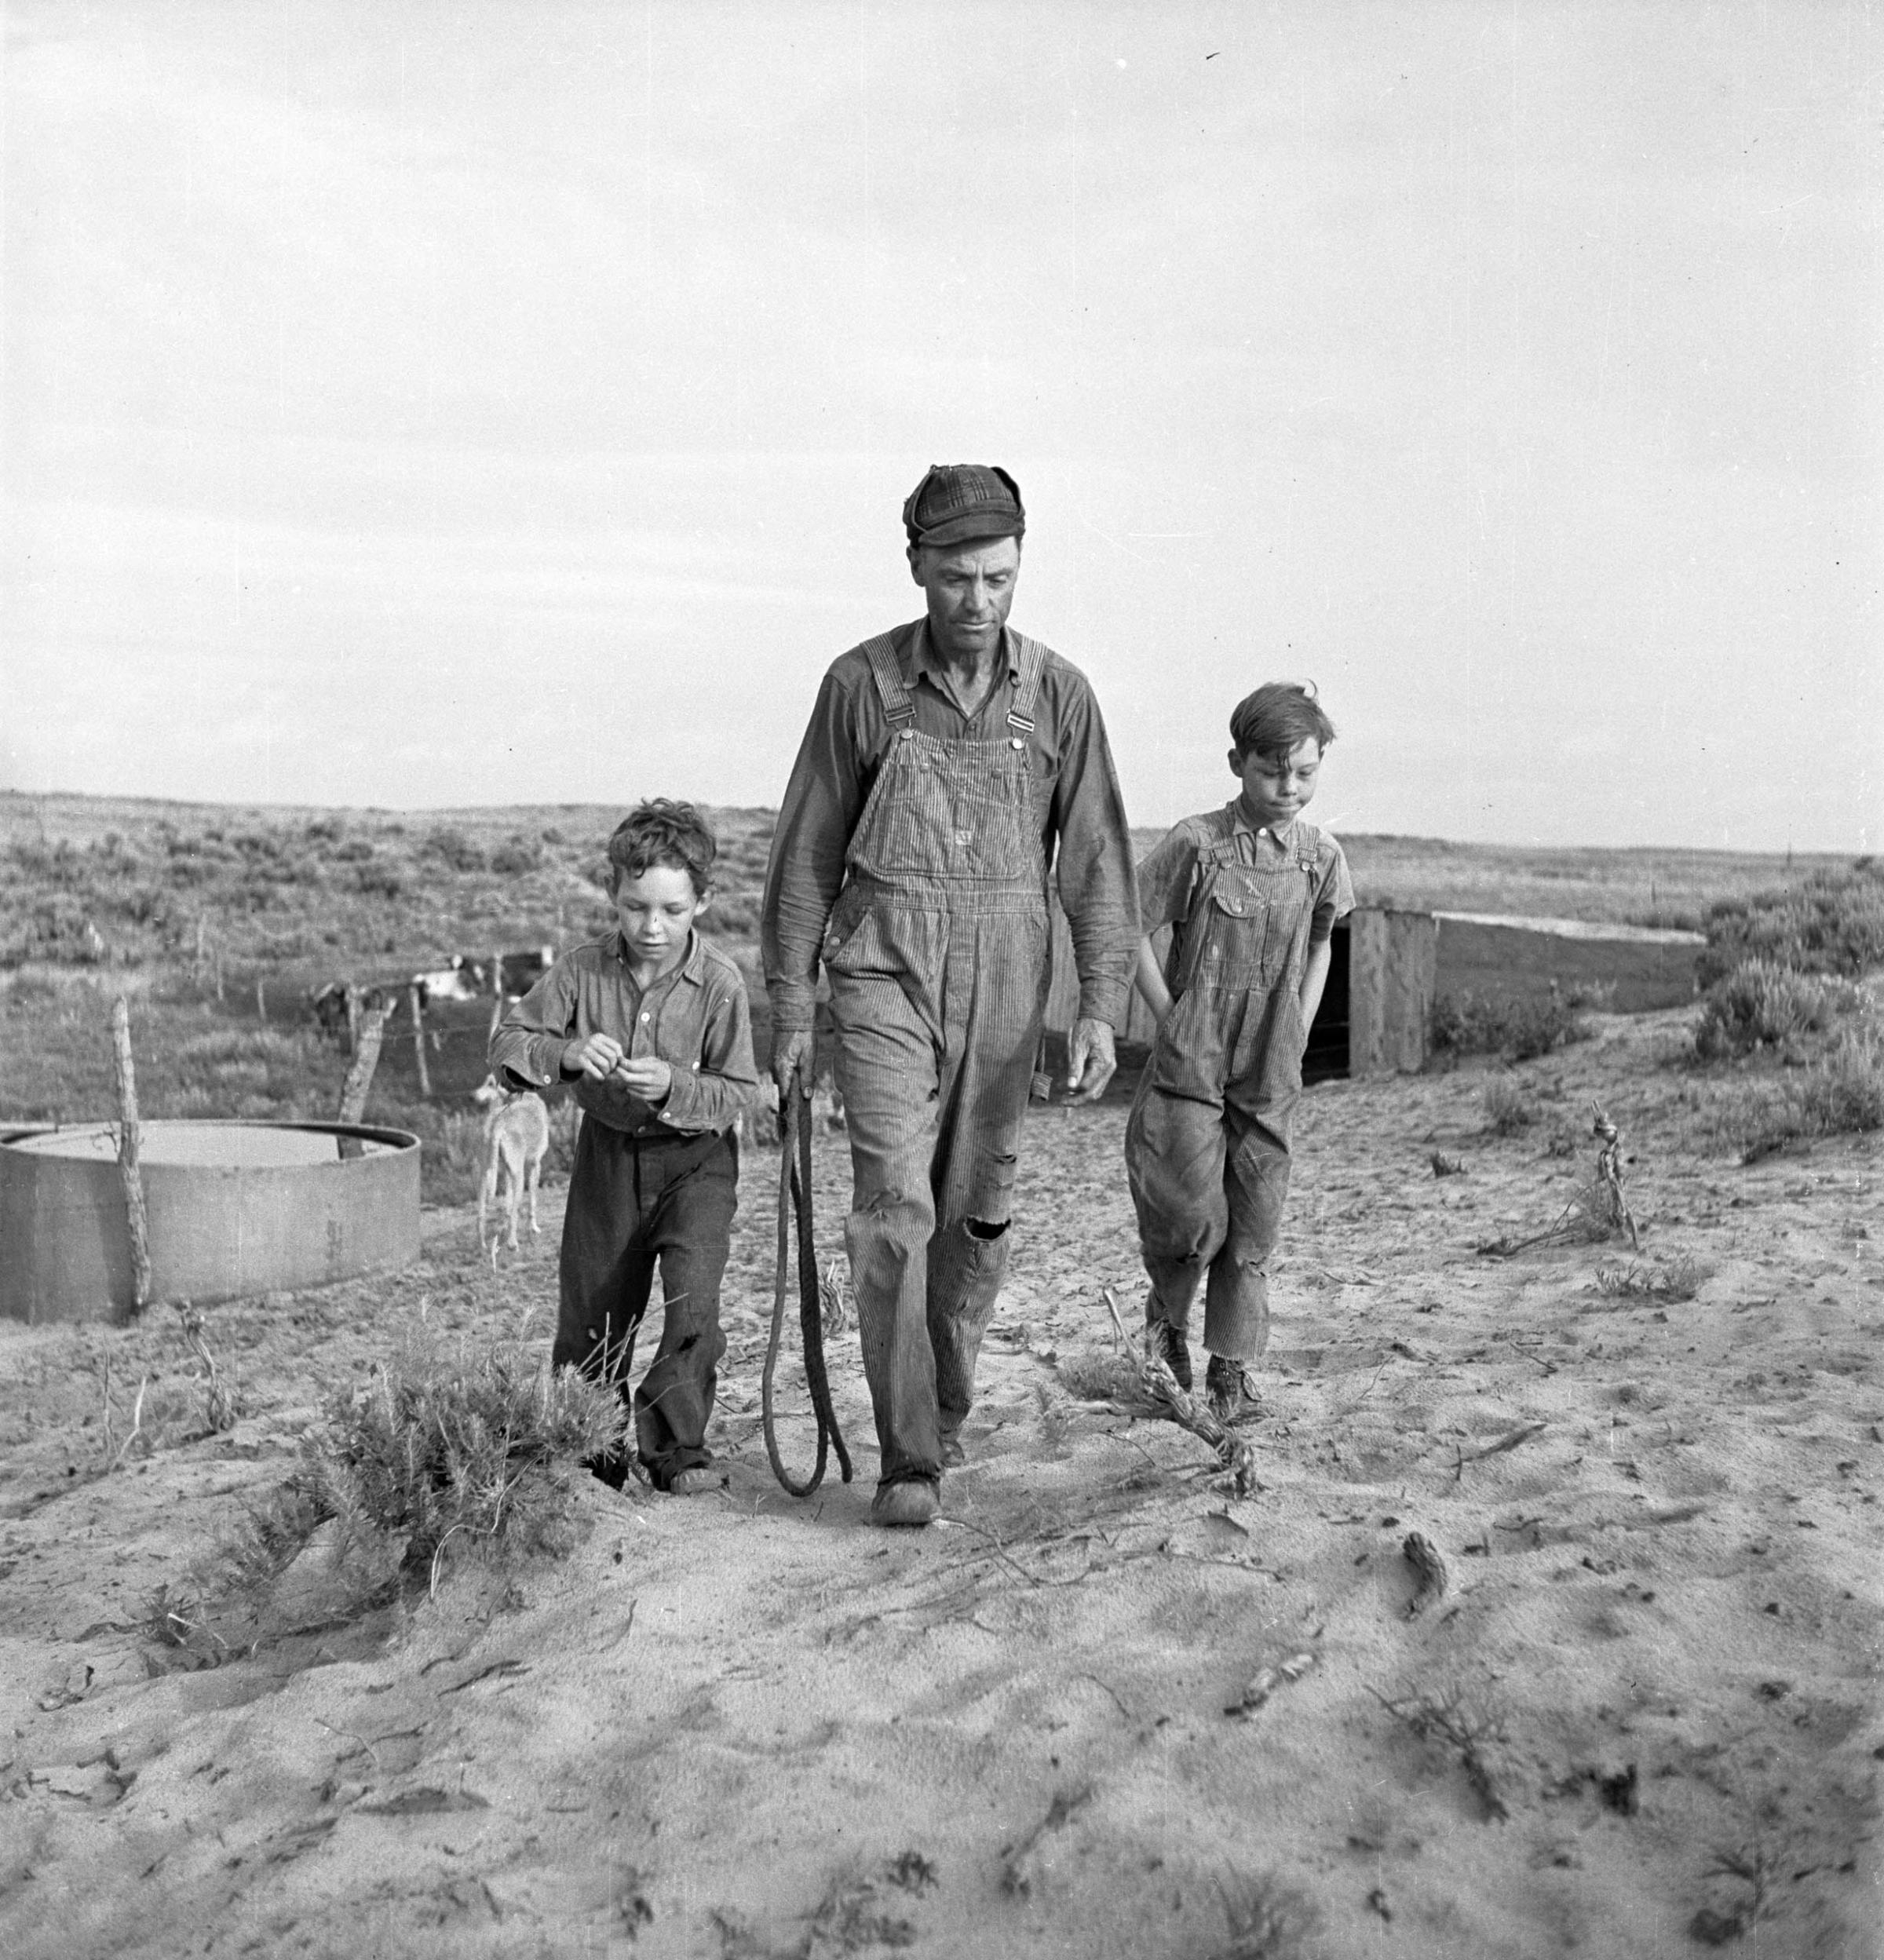 Farmer and sons, Oklahoma, 1942.